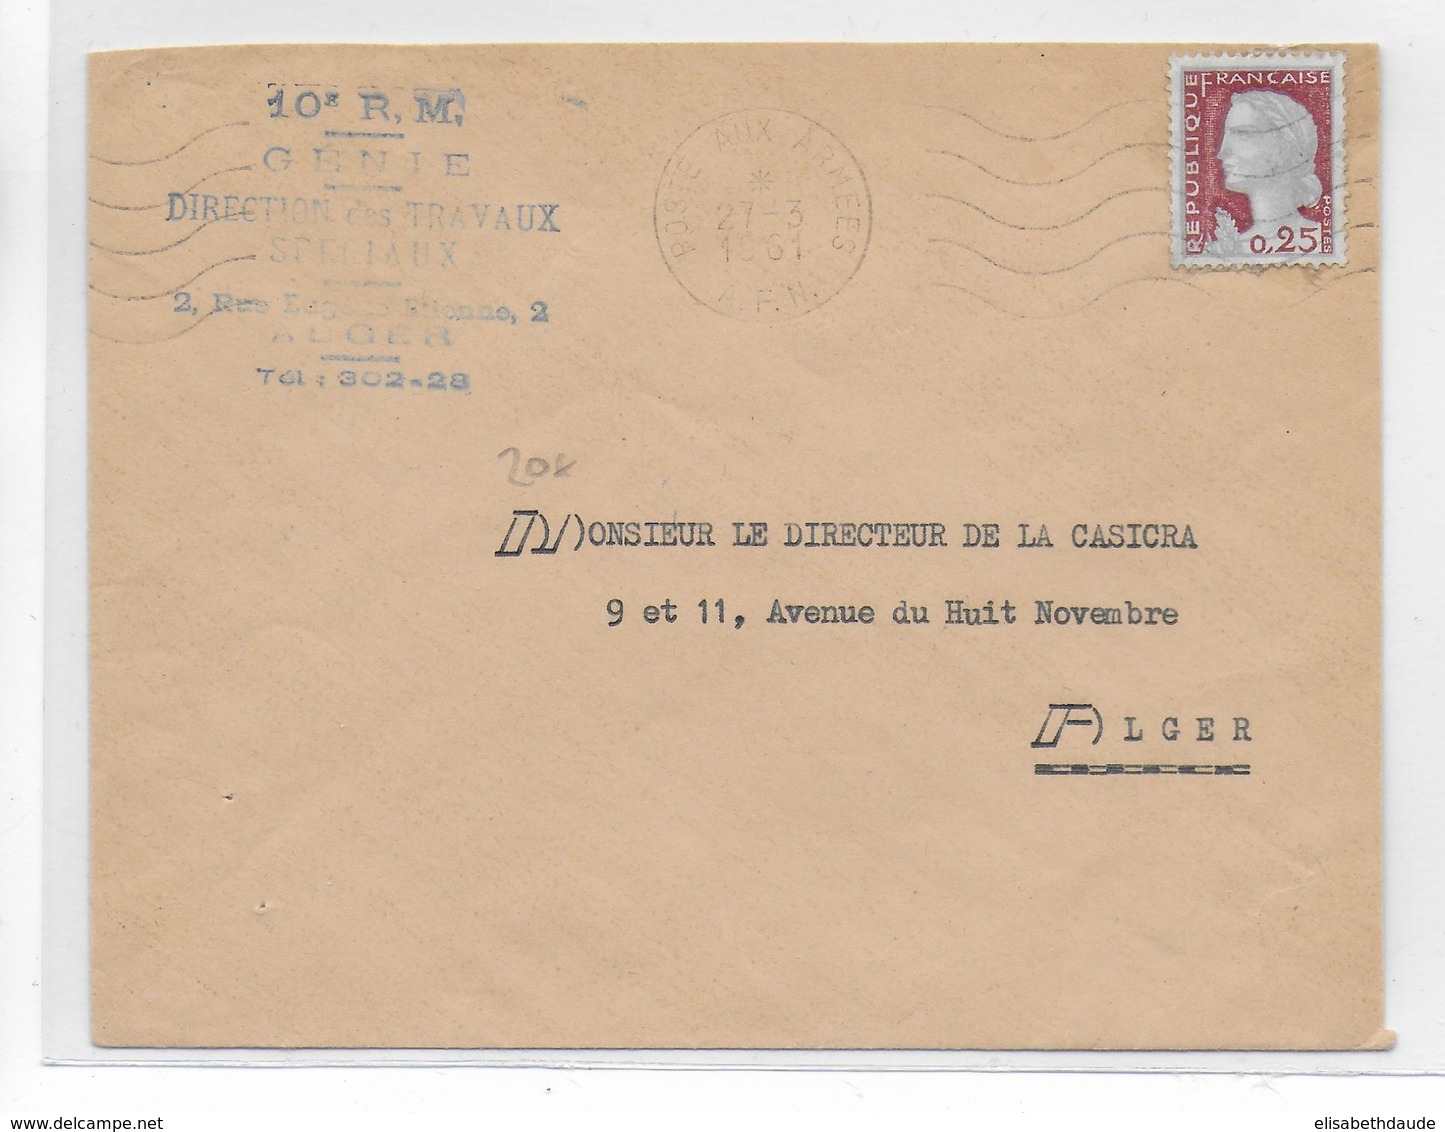 GUERRE D'ALGERIE - 1961 - DECARIS Sur ENVELOPPE Des ARMEES (10° R.M - GENIE) à ALGER - Algerienkrieg